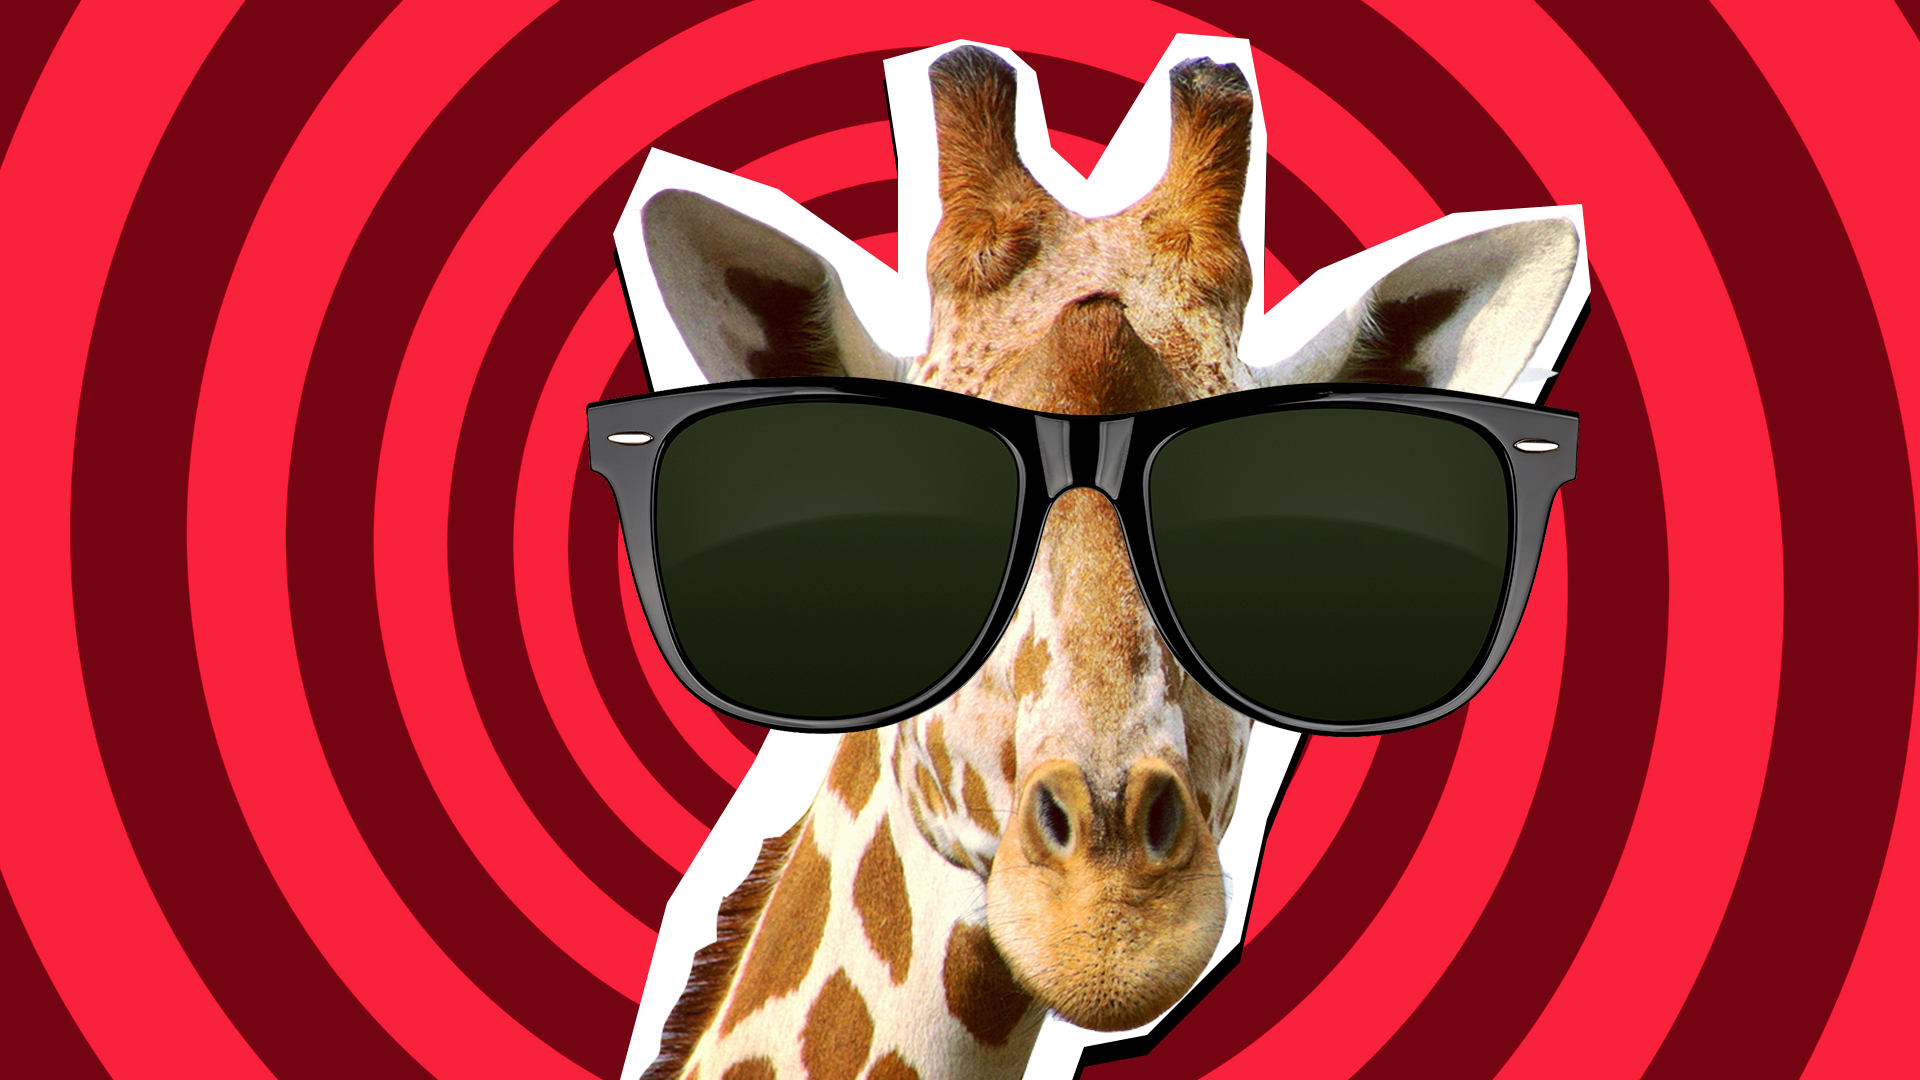 Giraffe wearing sunglasses